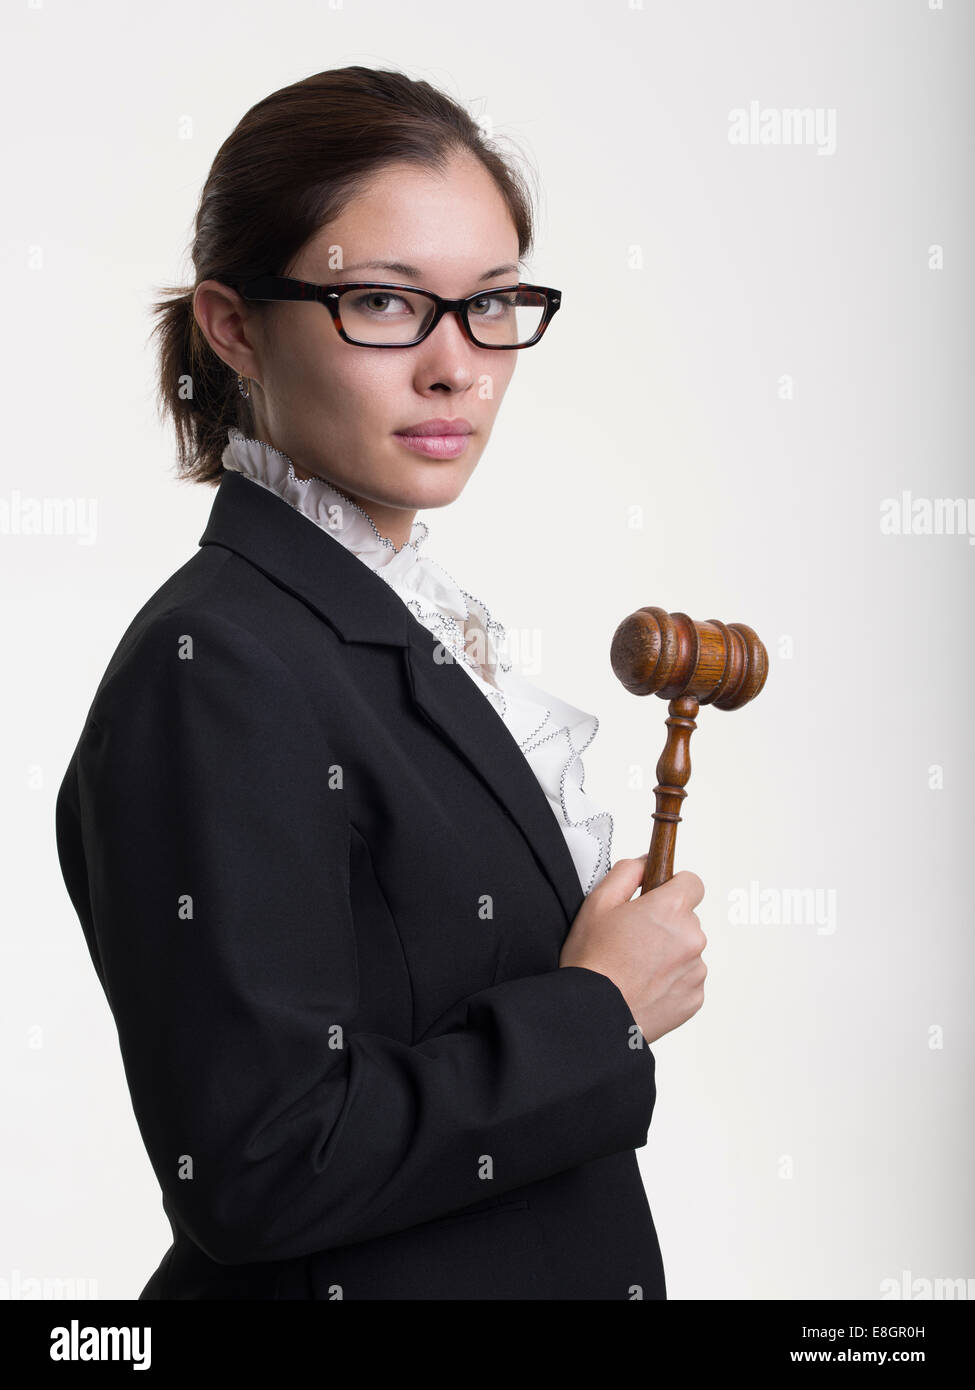 Jeune femme avocate / étudiante en droit Banque D'Images